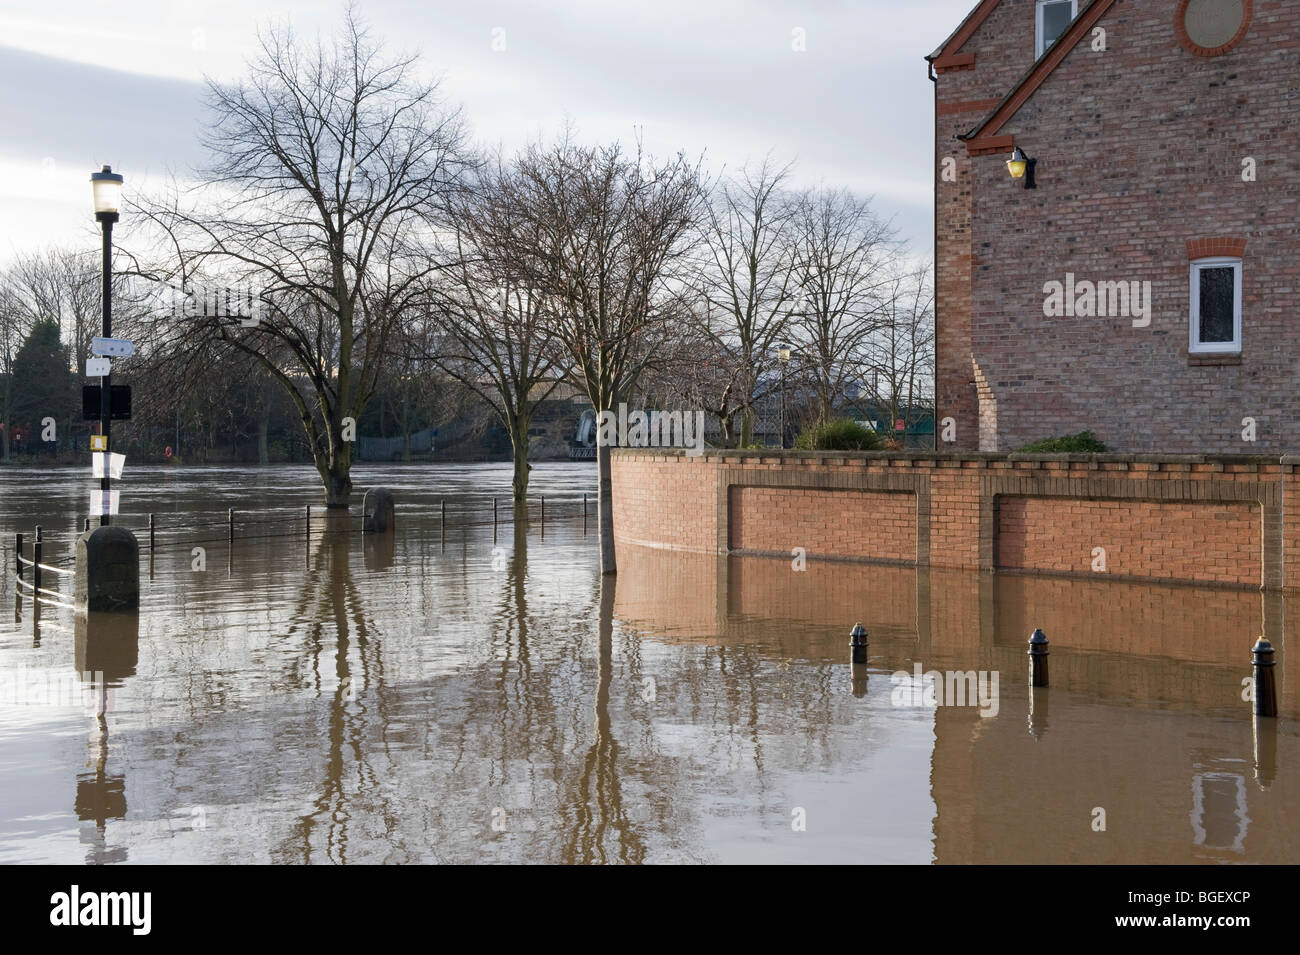 Il fiume Ouse ha scoppiato le sue banche dopo la pioggia pesante (percorso lungo il fiume sommerso sotto l'acqua di alluvione, alto muro barriera) - York, North Yorkshire, Inghilterra Regno Unito. Foto Stock